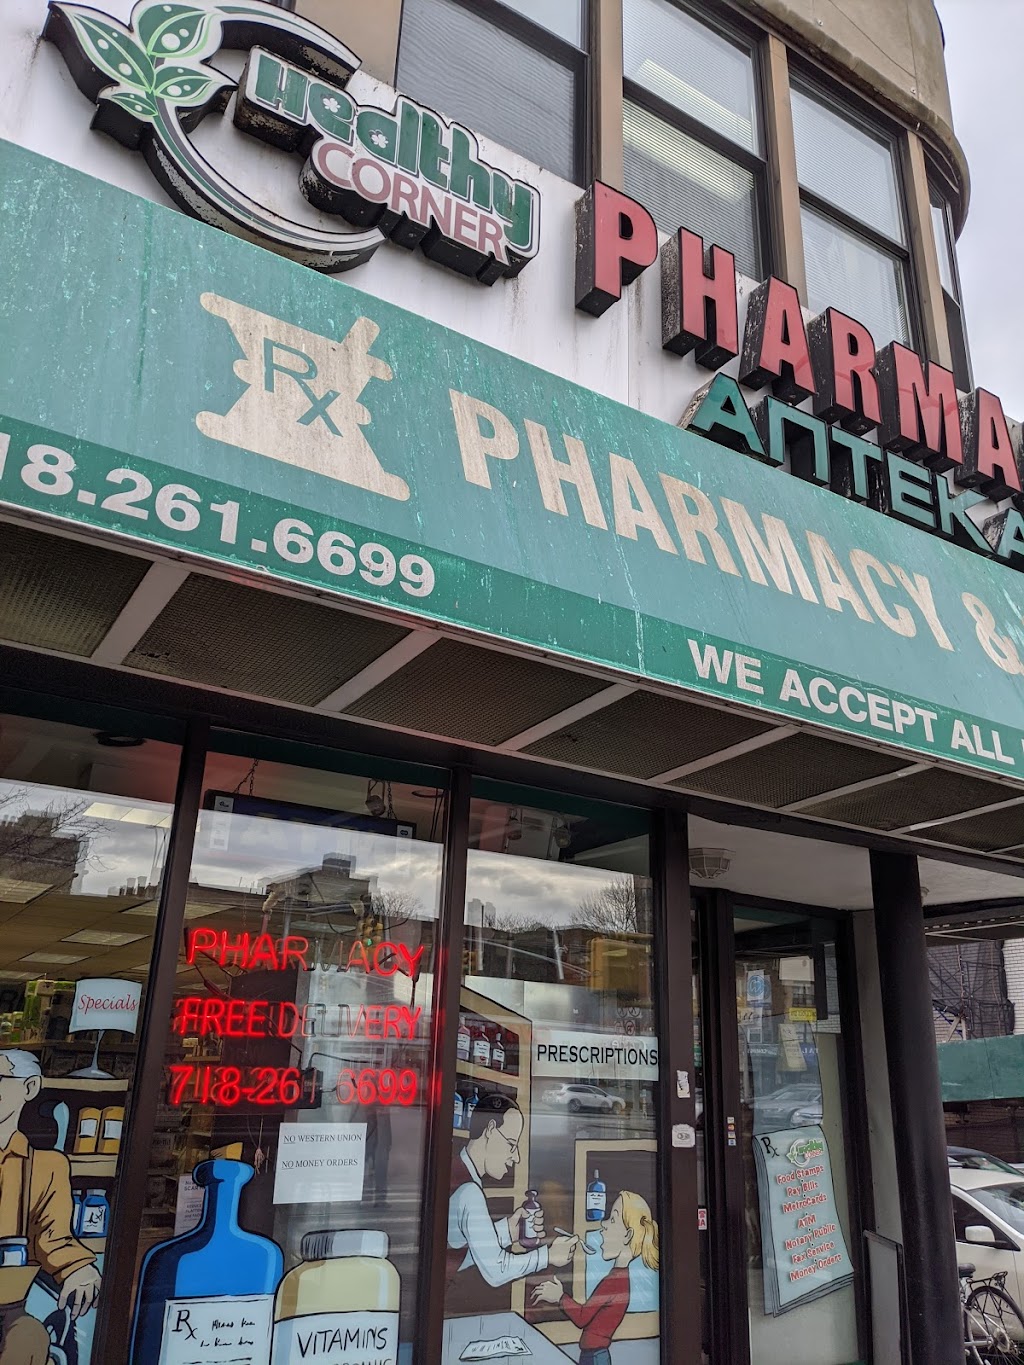 Healthy Corner Pharmacy - 11665 Queens Blvd, Queens, NY 11375